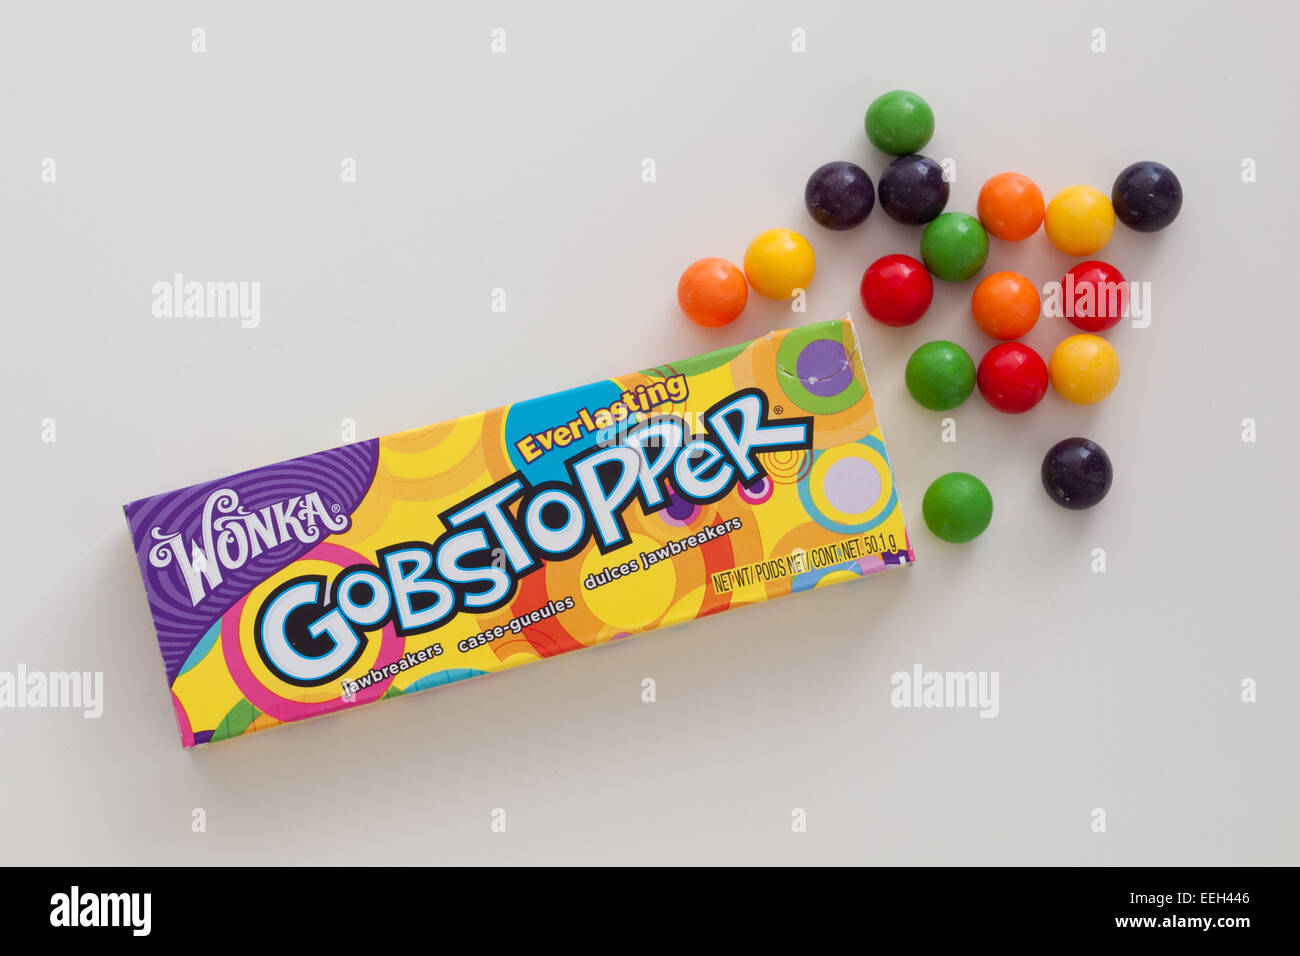 Eine Schachtel mit ewig Gobstopper Bonbons.  Von Willy Wonka Candy Company, eine Marke von Nestlé hergestellt. Stockfoto